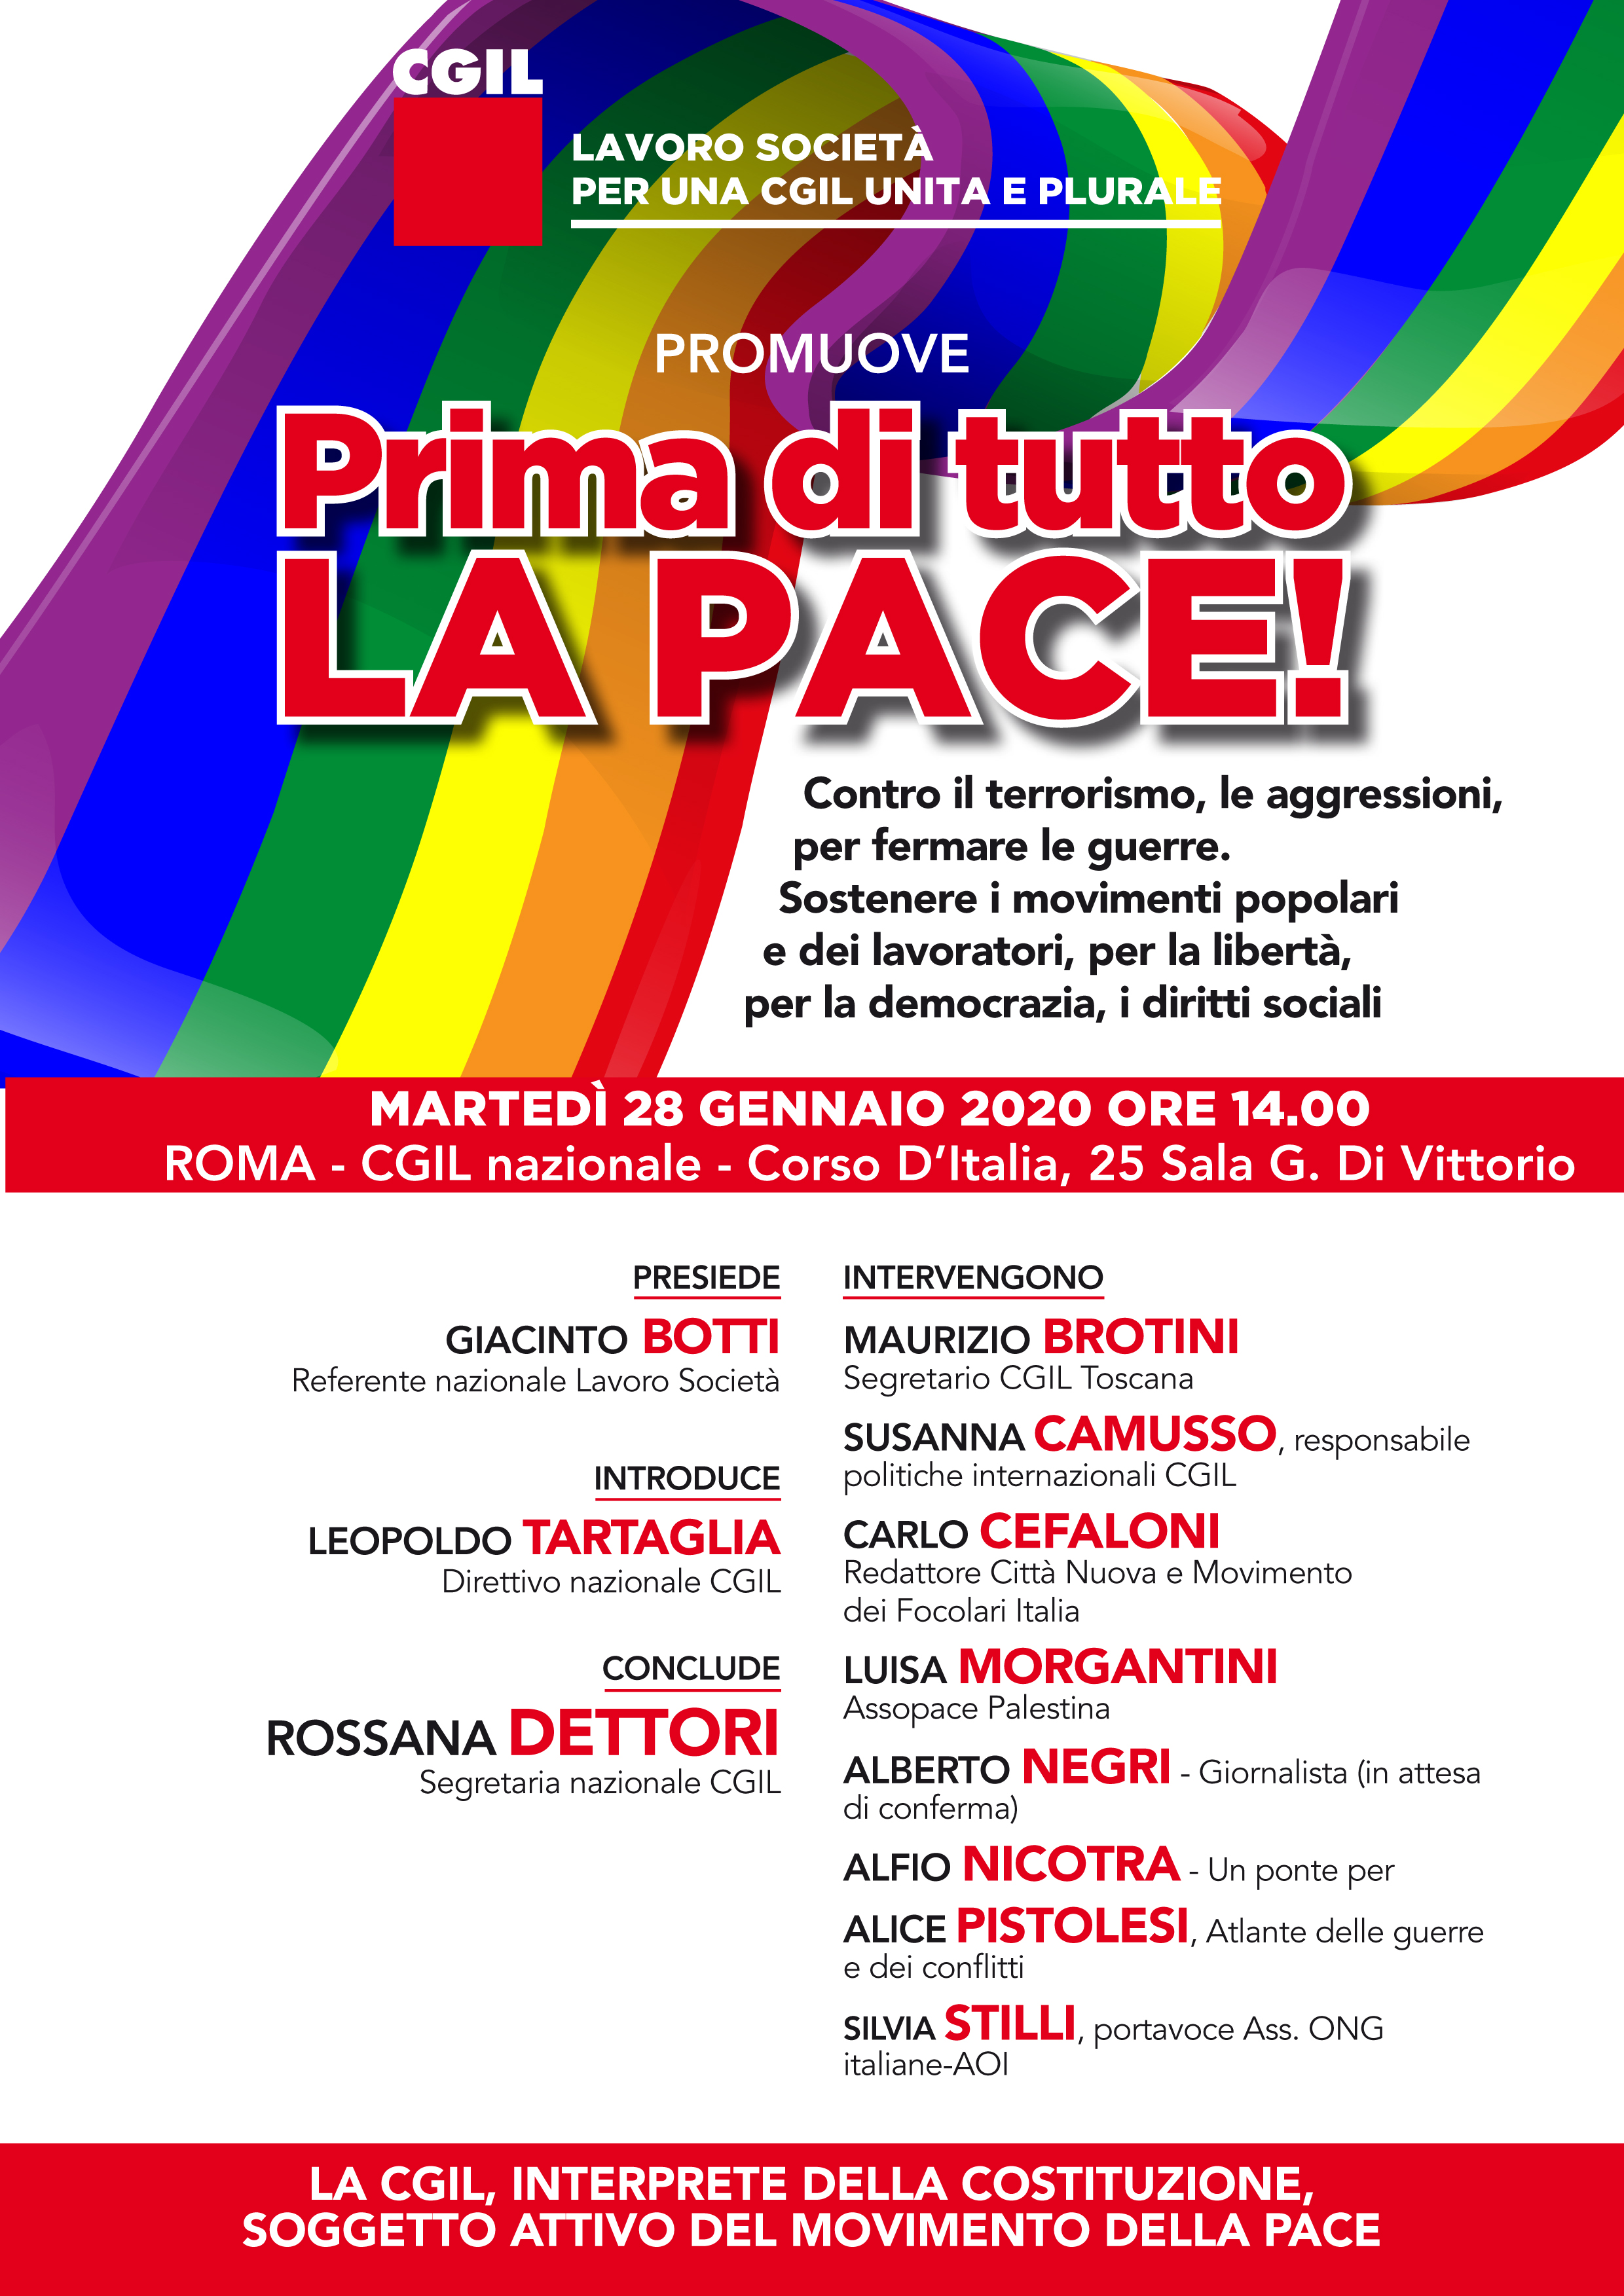 Roma, 28 gennaio: Incontro per la pace promosso dalla CGIL